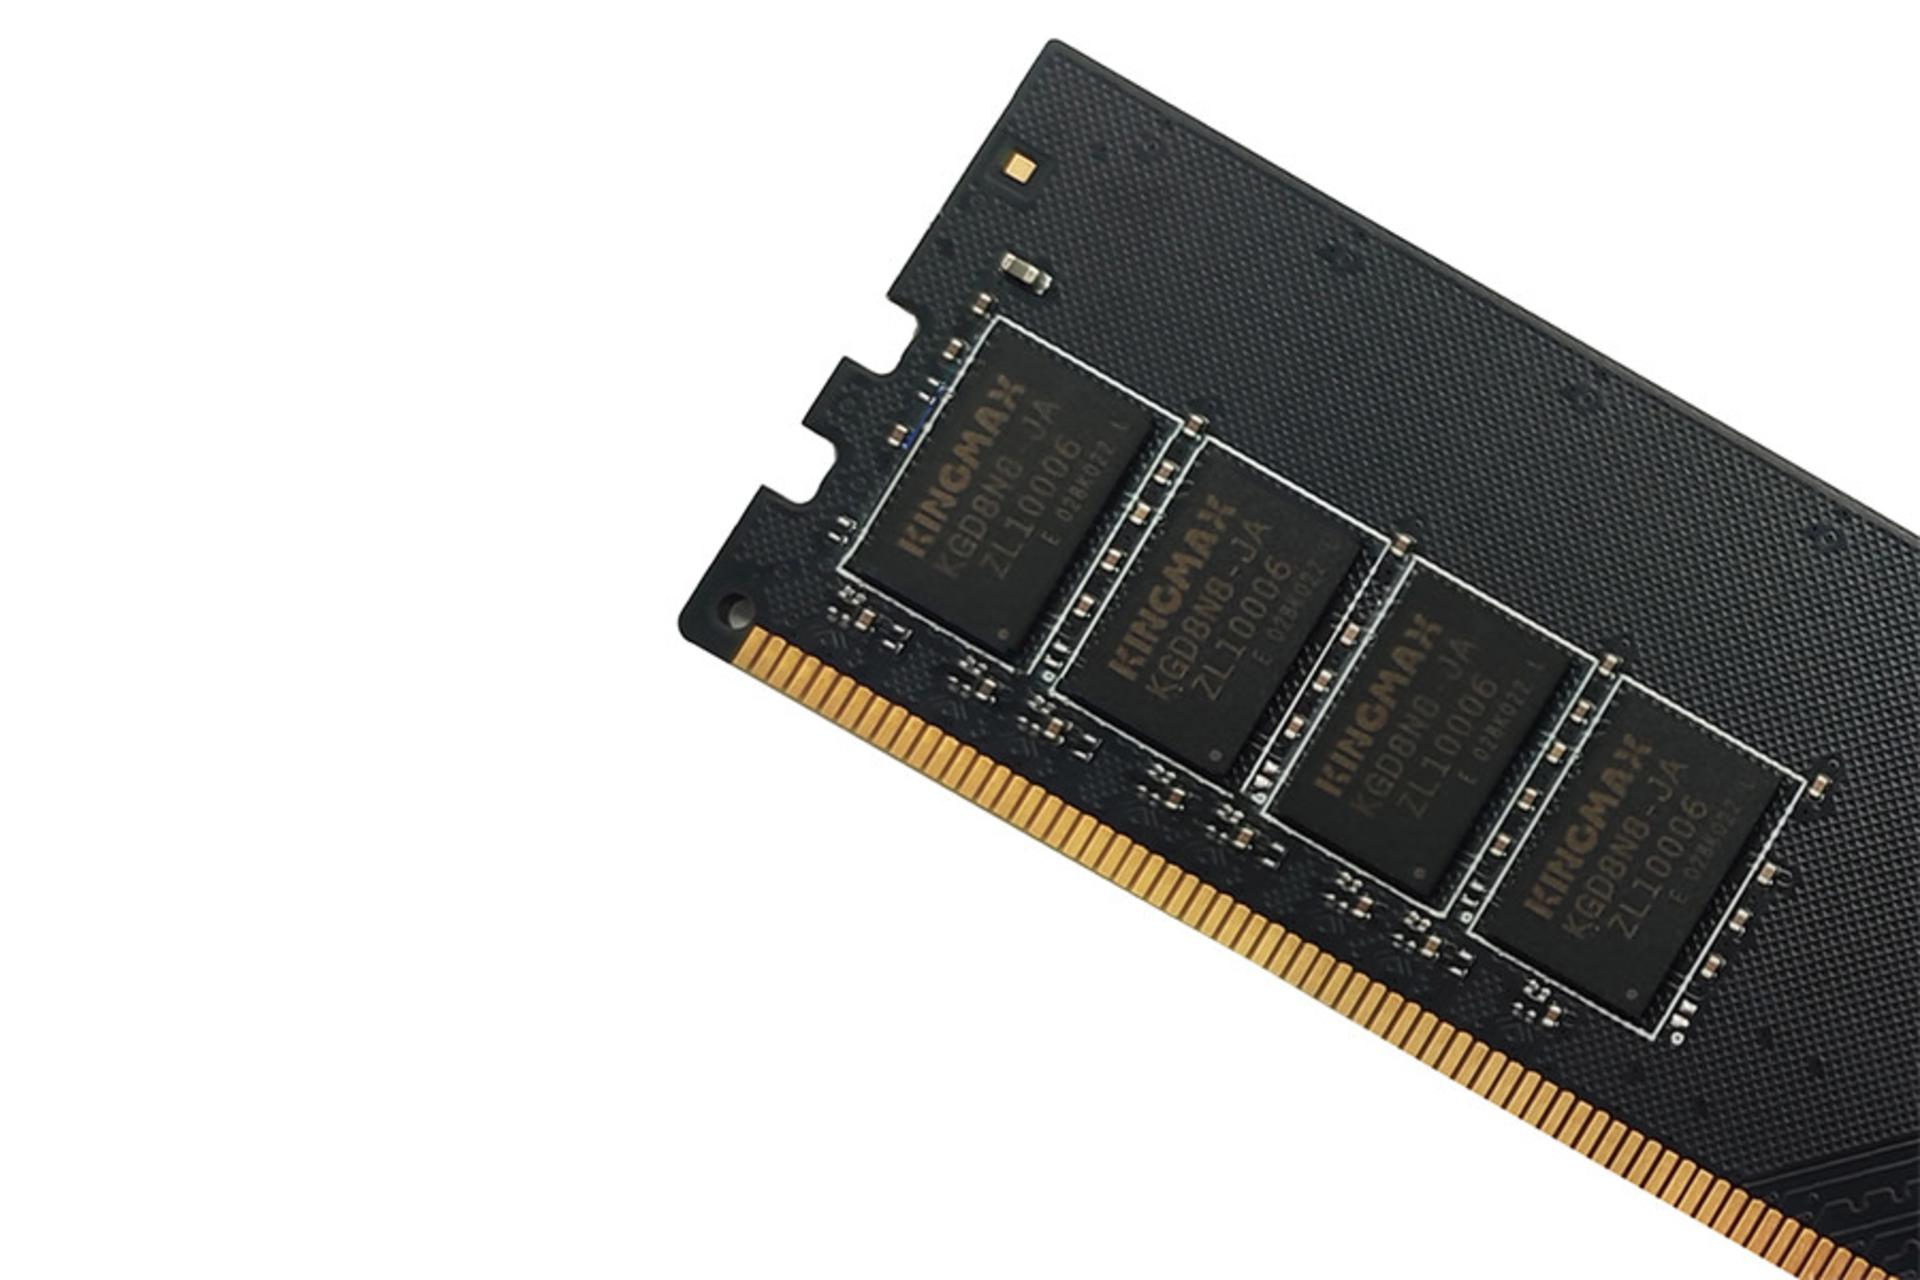 نمایش بخشی از رم کینگ مکس GLAF62F-D8K8H5 ظرفیت 4 گیگابایت از نوع DDR4-2666